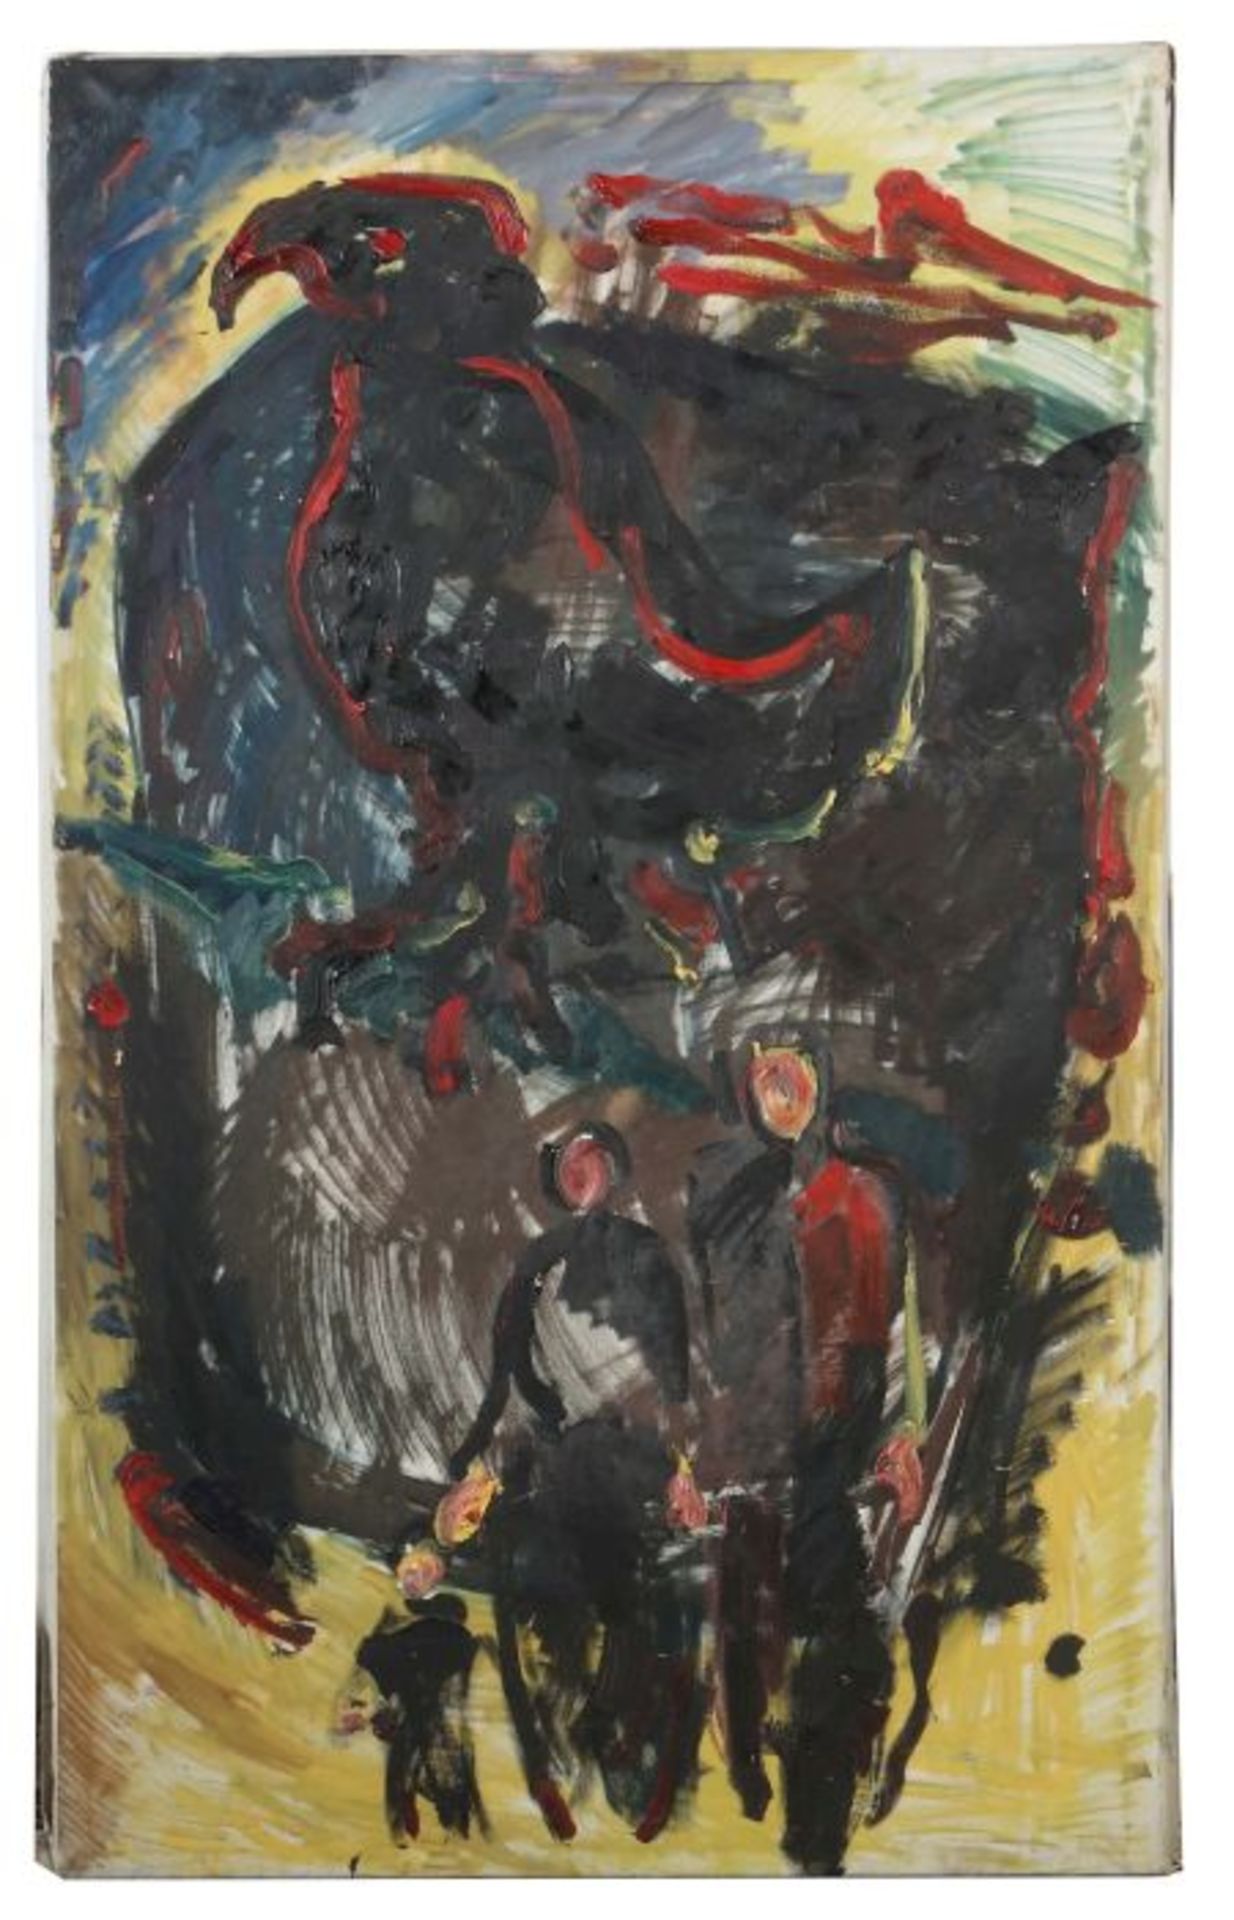 Mohring, Ottmar 1935 - 2015, Bildhauer, Maler und Grafiker in Stuttgart, Stud. an der Akad. - Bild 2 aus 3